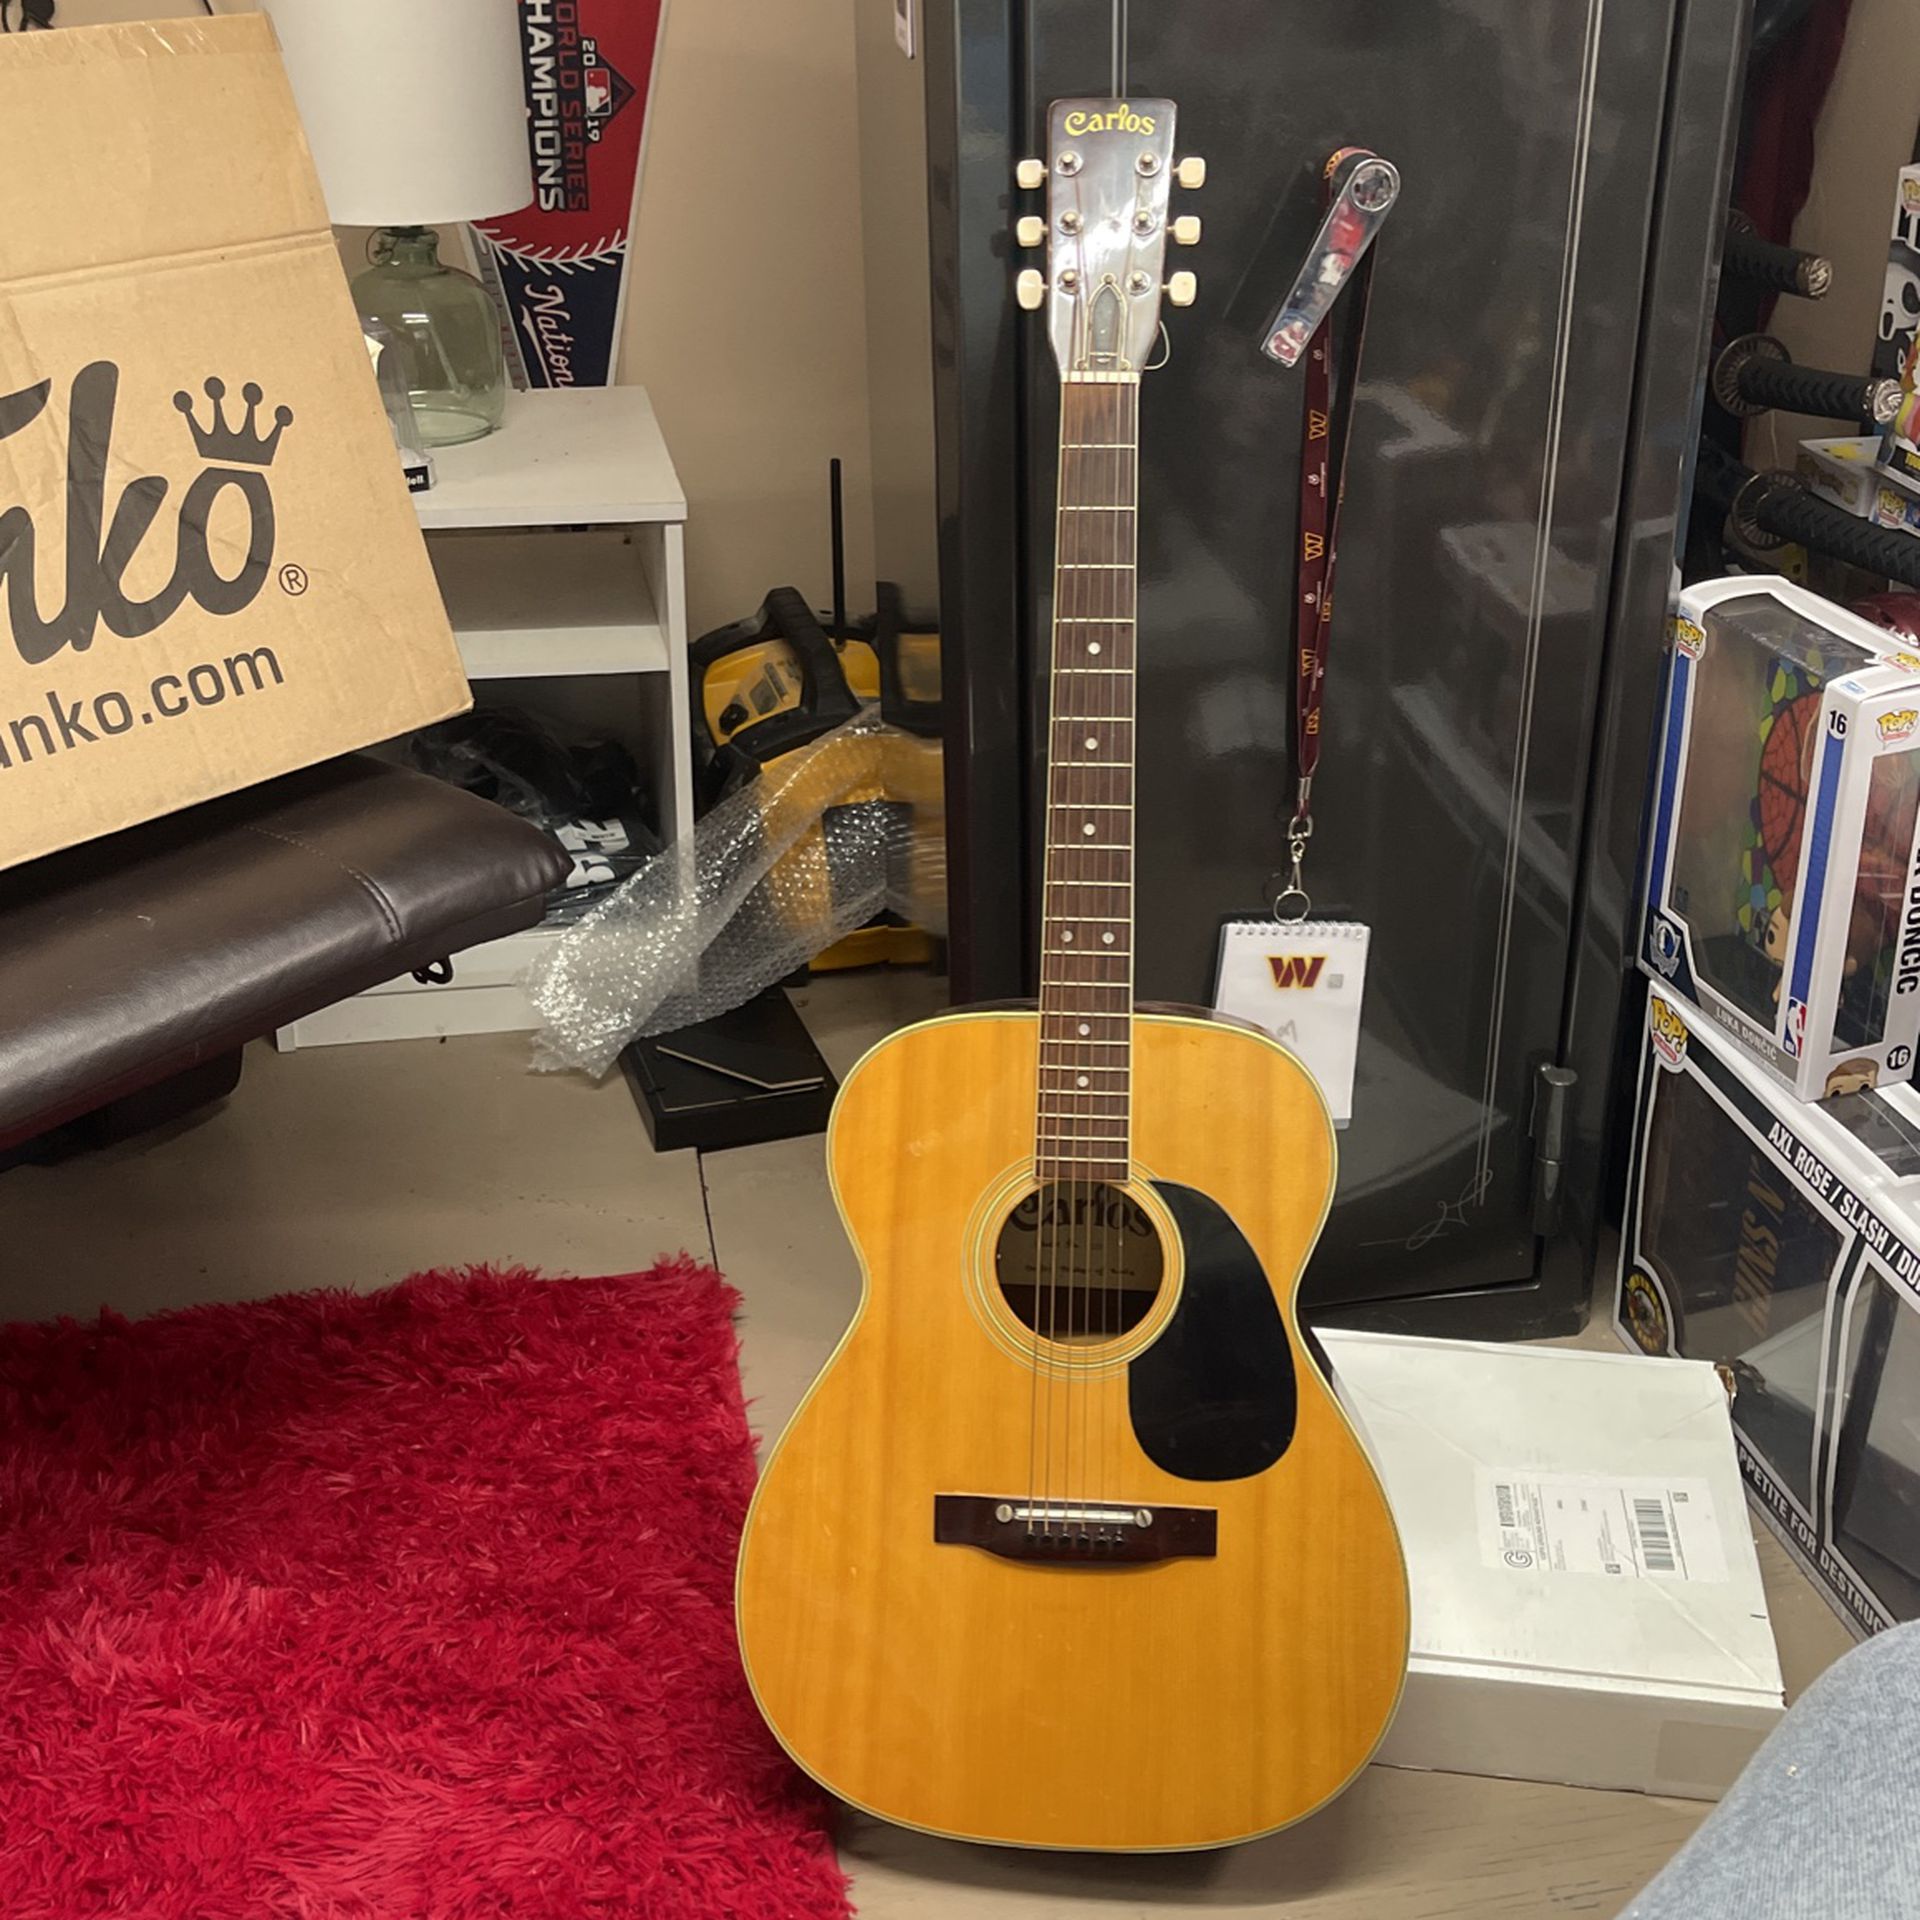 Carlos Acoustic Guitar Model 210